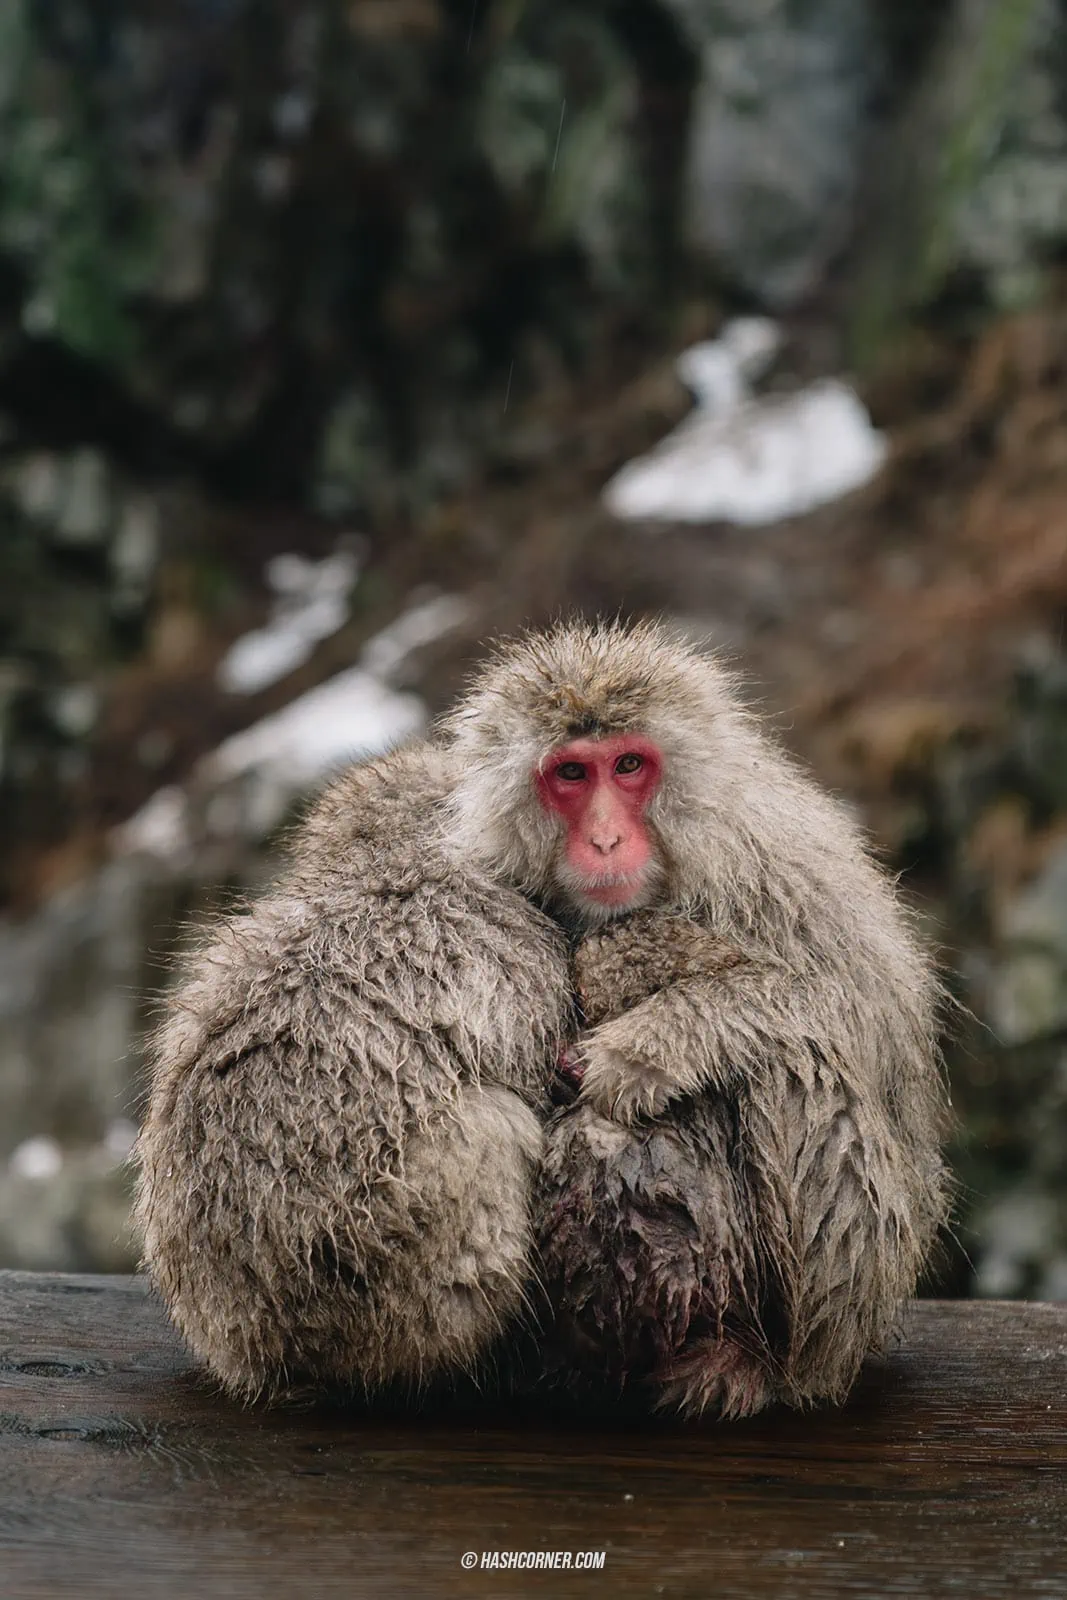 รีวิว สวนลิงจิโกคุดานิ (Snow Monkey Park) x นากาโน่ ดูลิงหิมะแช่ออนเซ็น